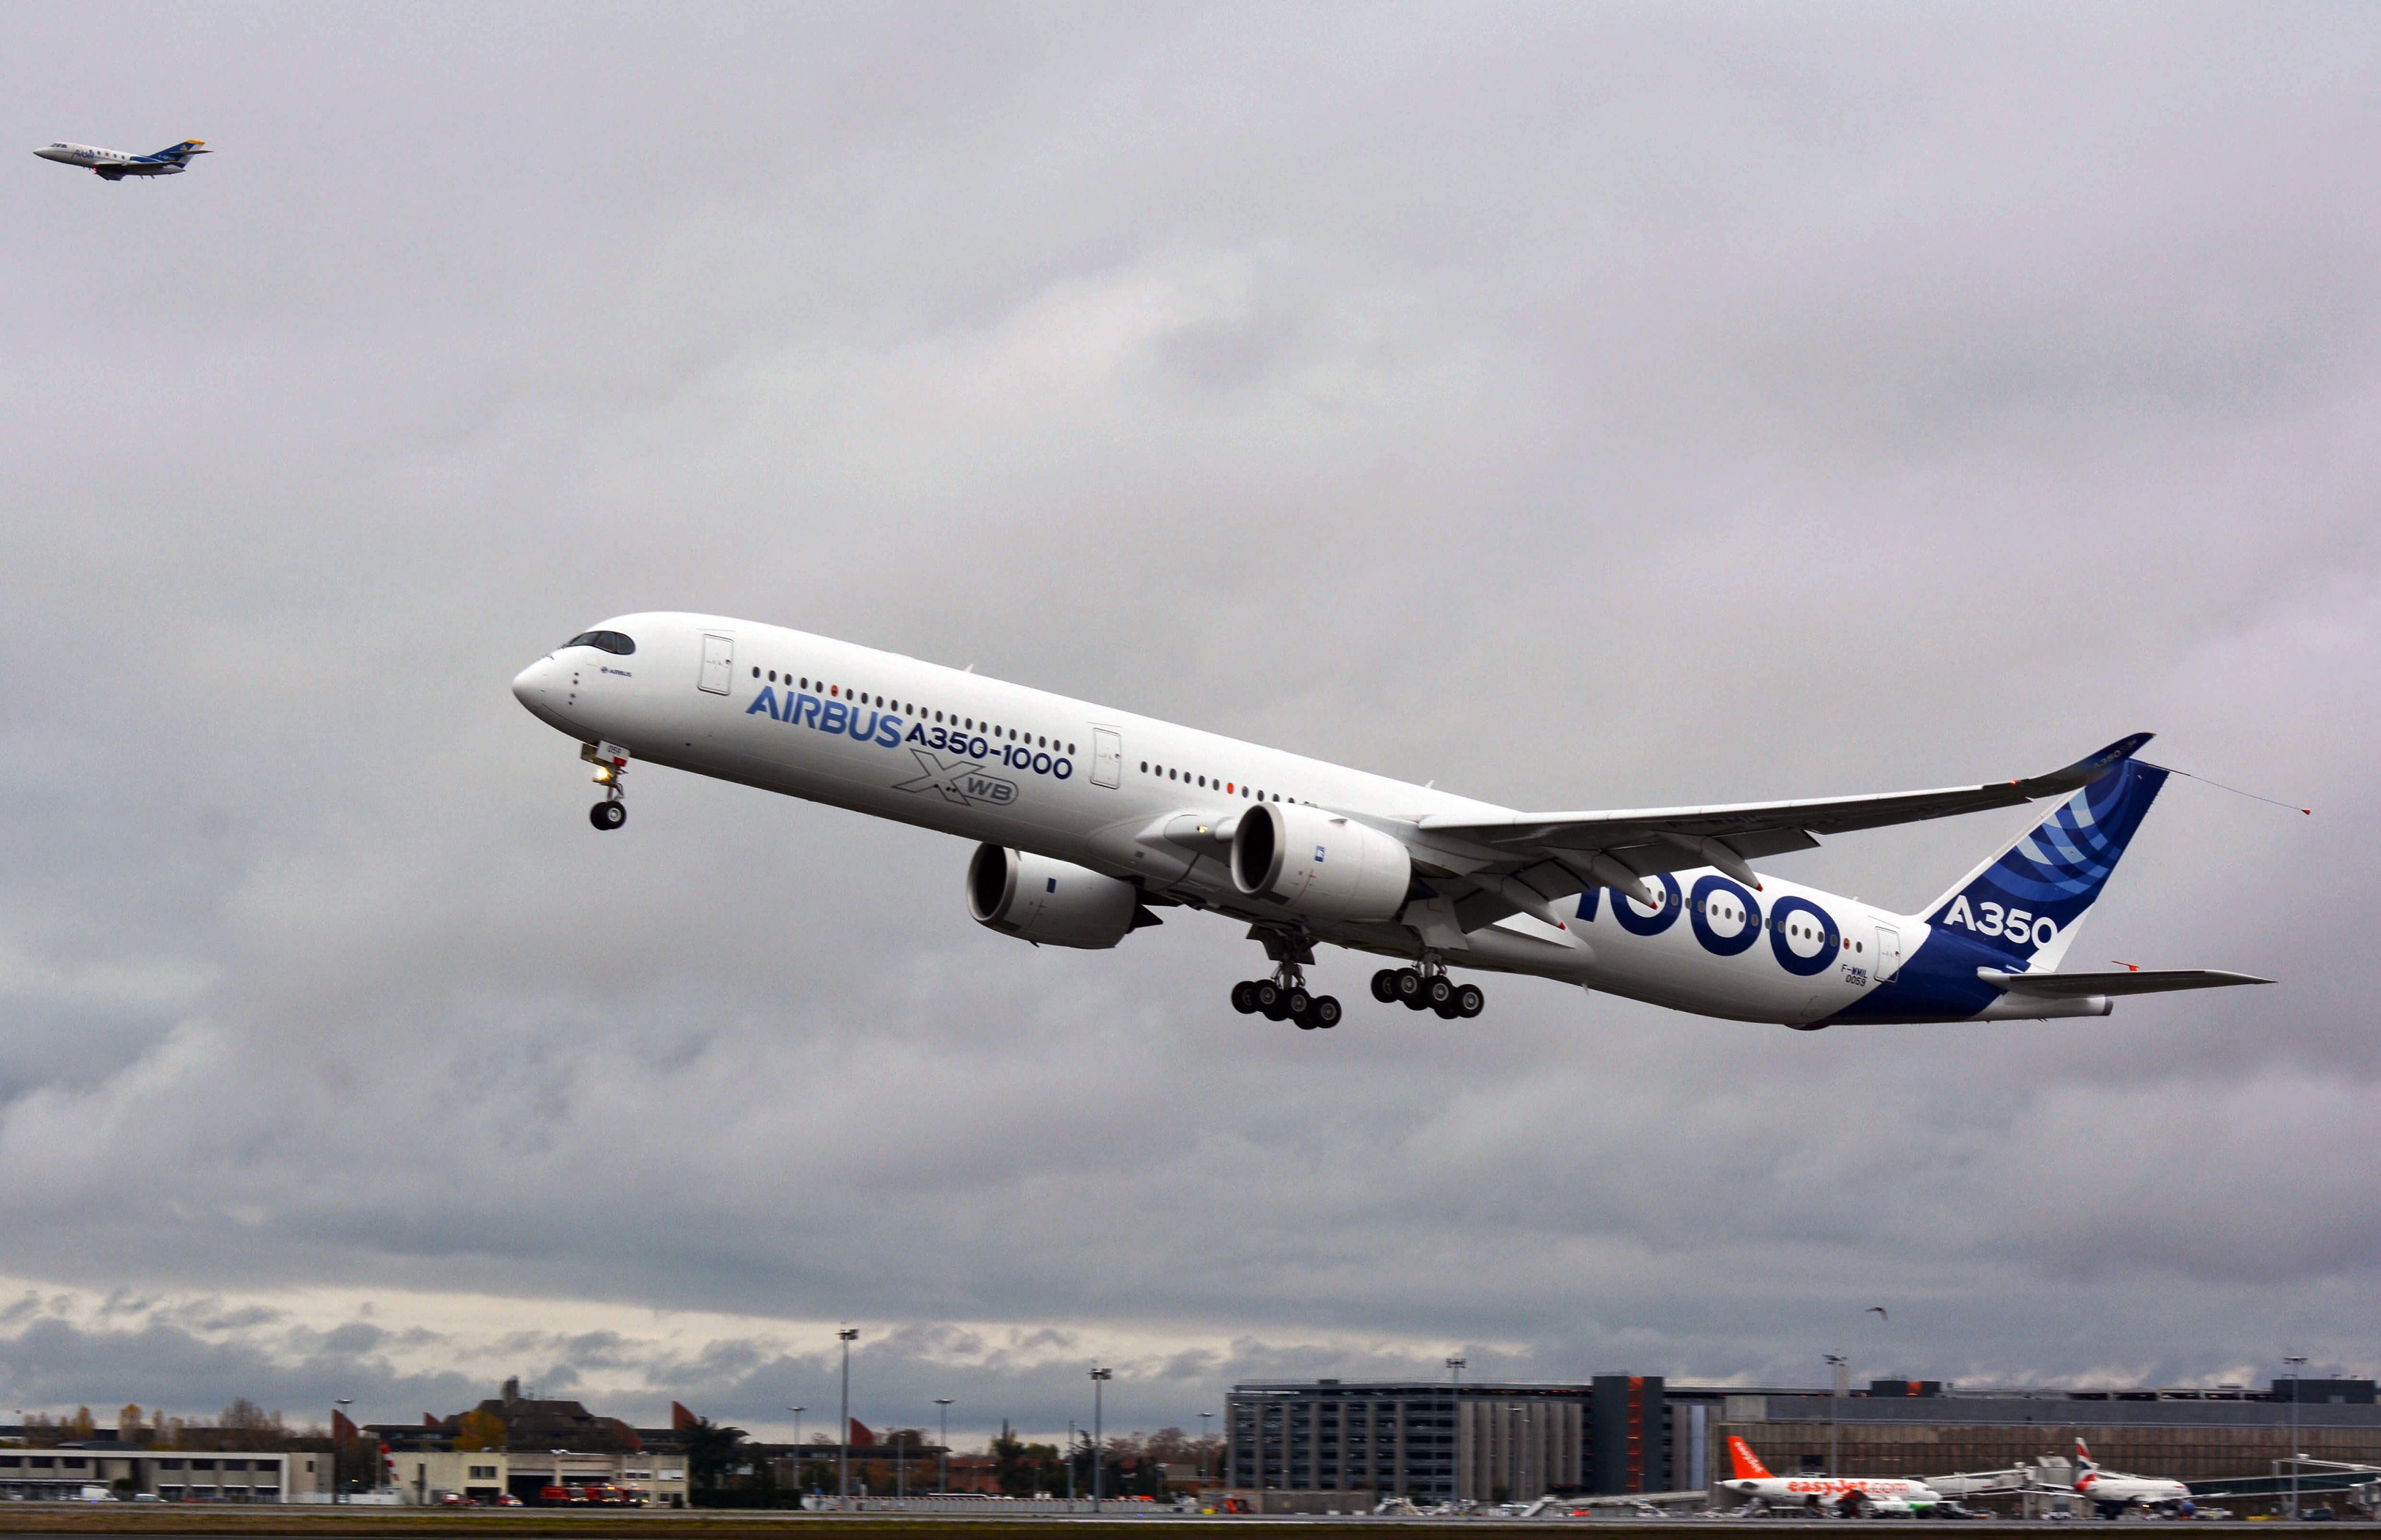 Een Airbus A350-1000, de grootste variant van het type. China Southern bestelt de kortere 900-uitvoering. Foto: EPA